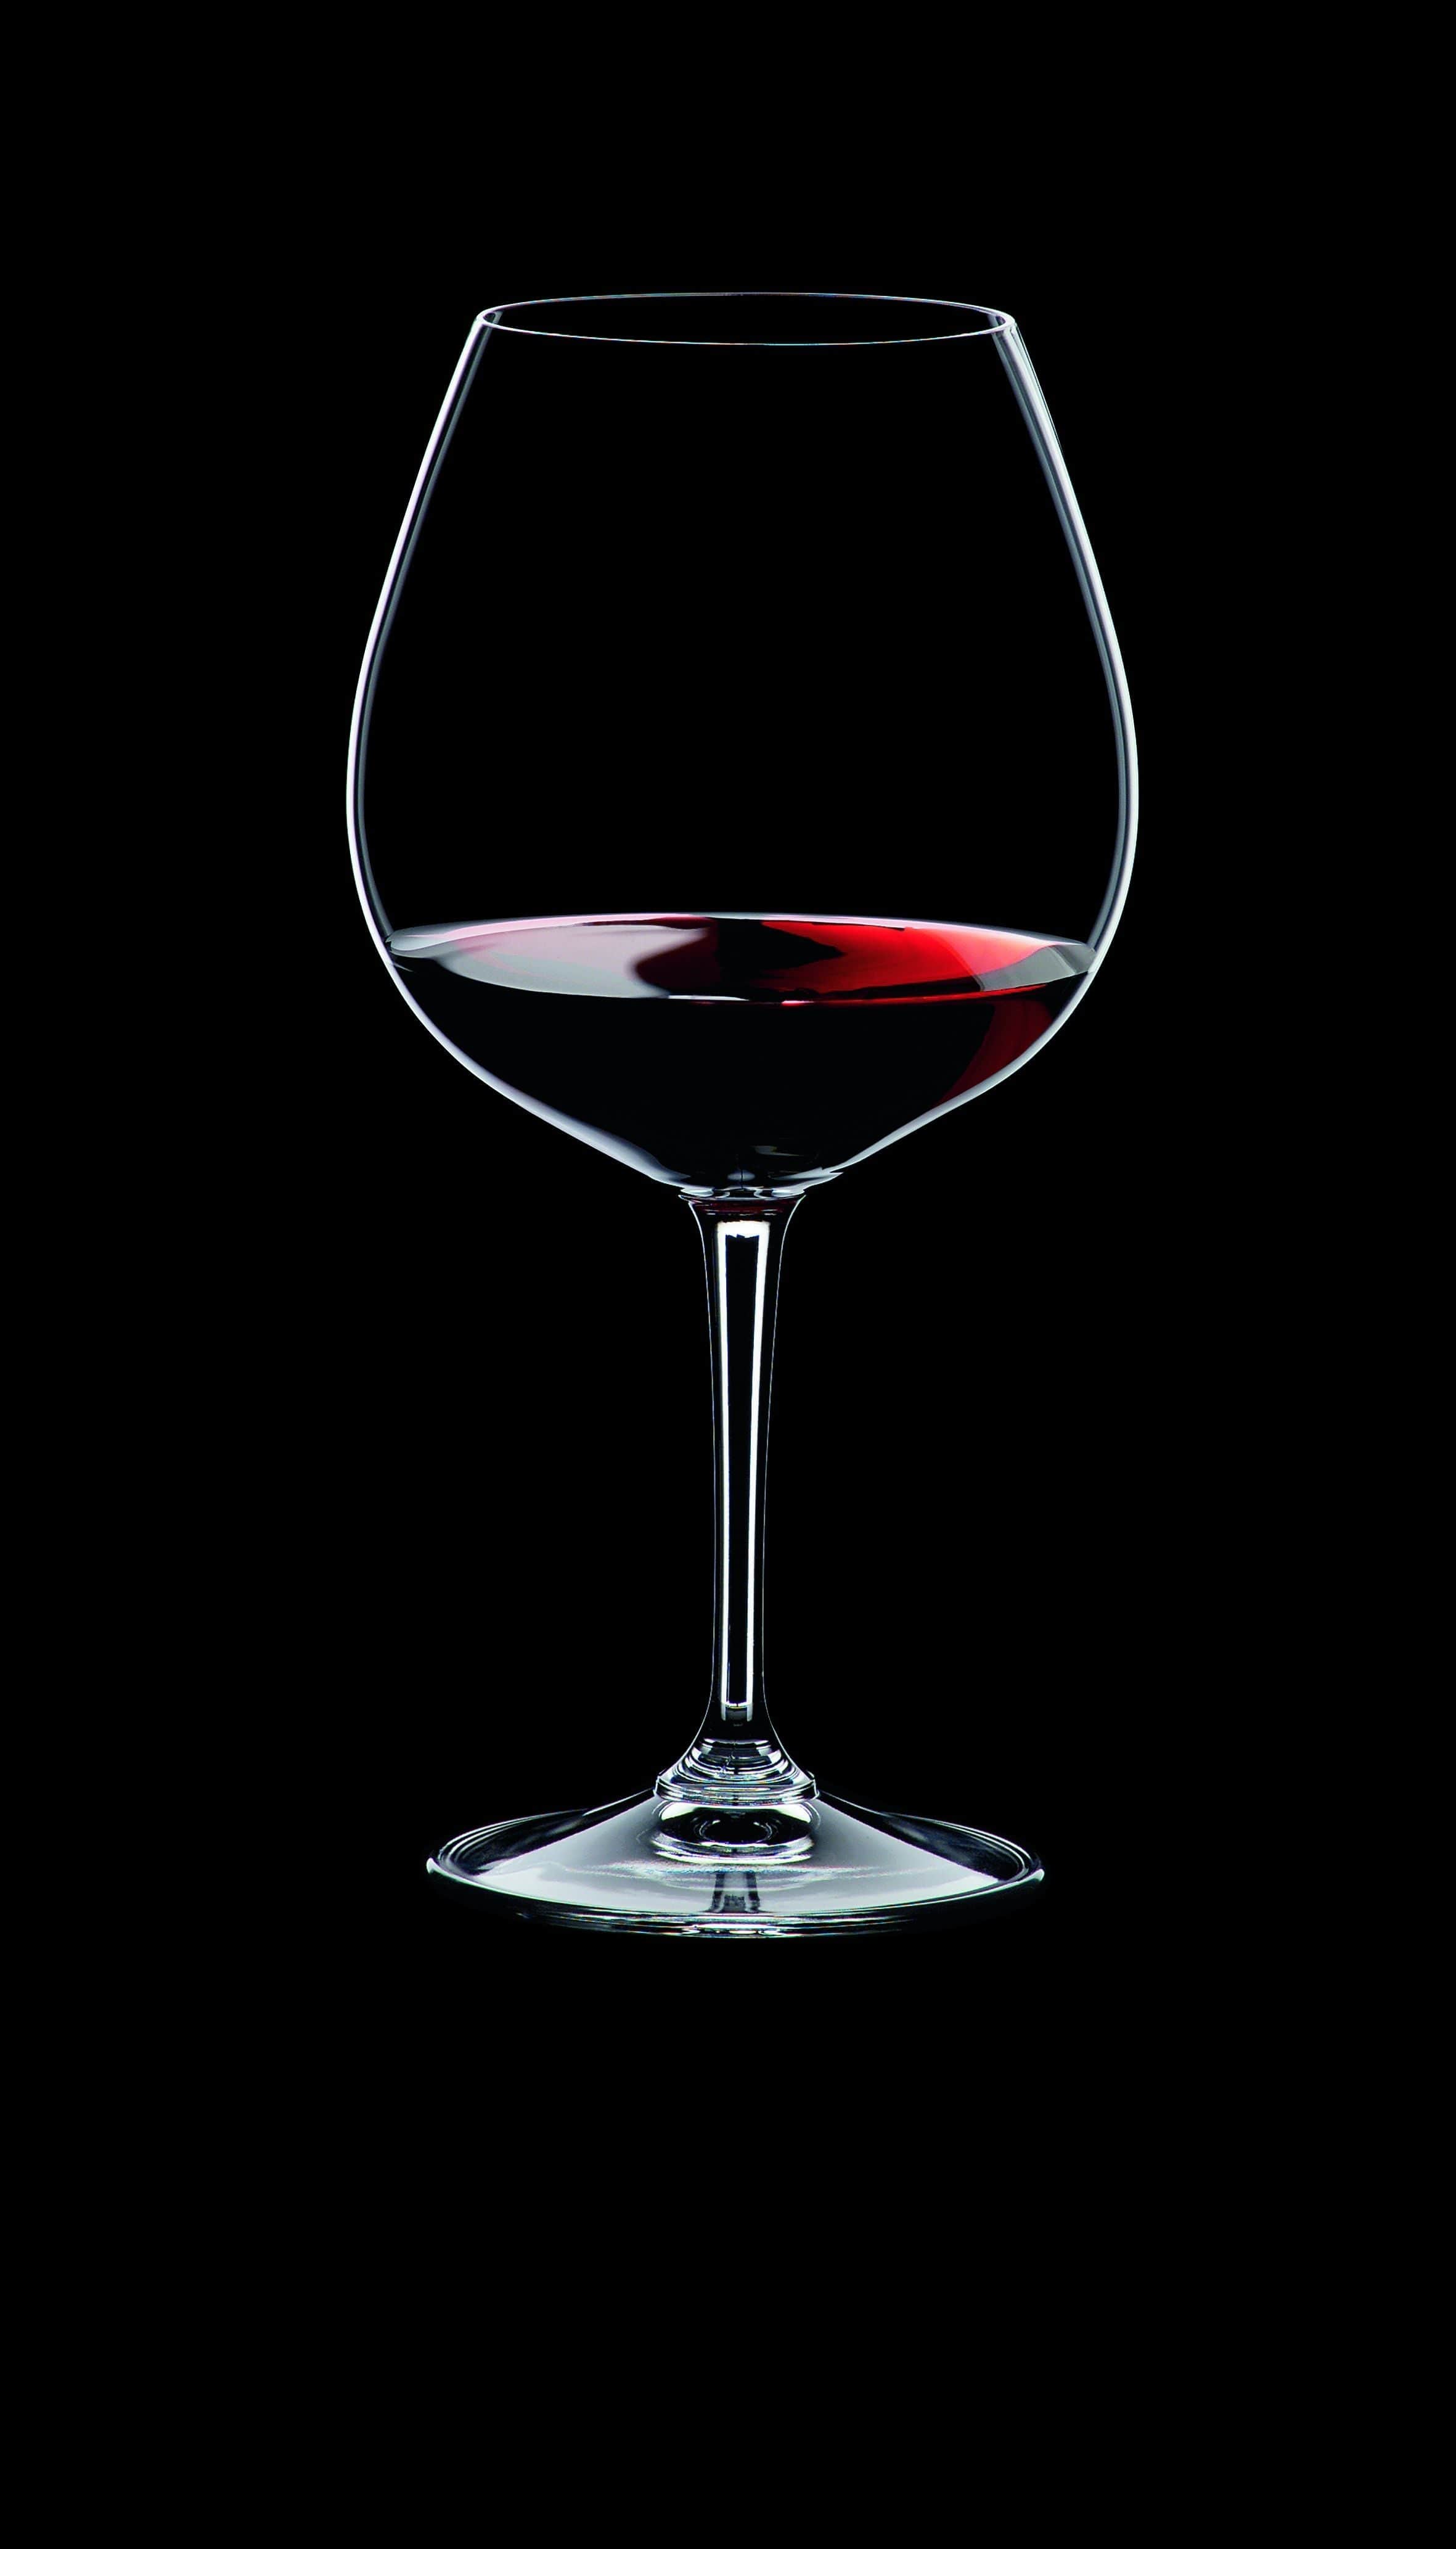 Nachtmann Vi Vino Burgundy Glass 700 Ml, Set Of 4